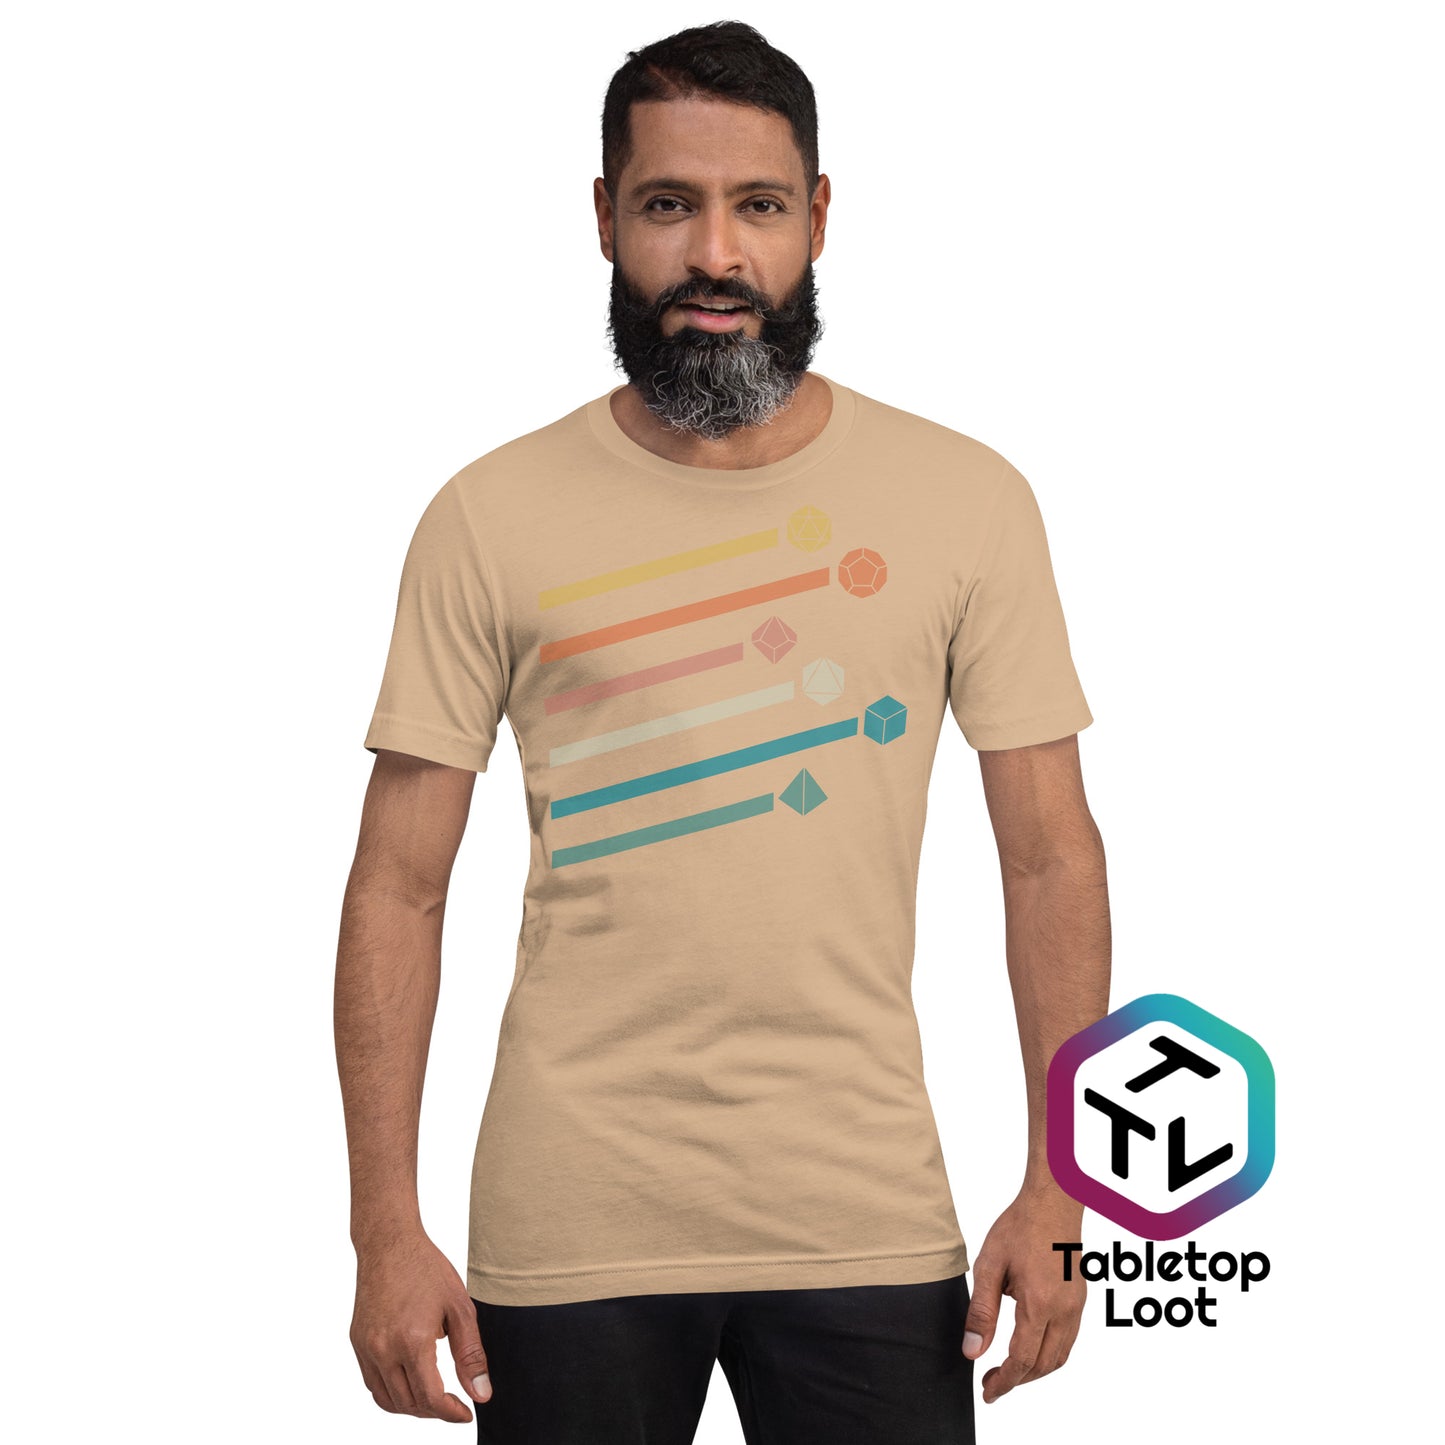 Camiseta unisex de dados retro